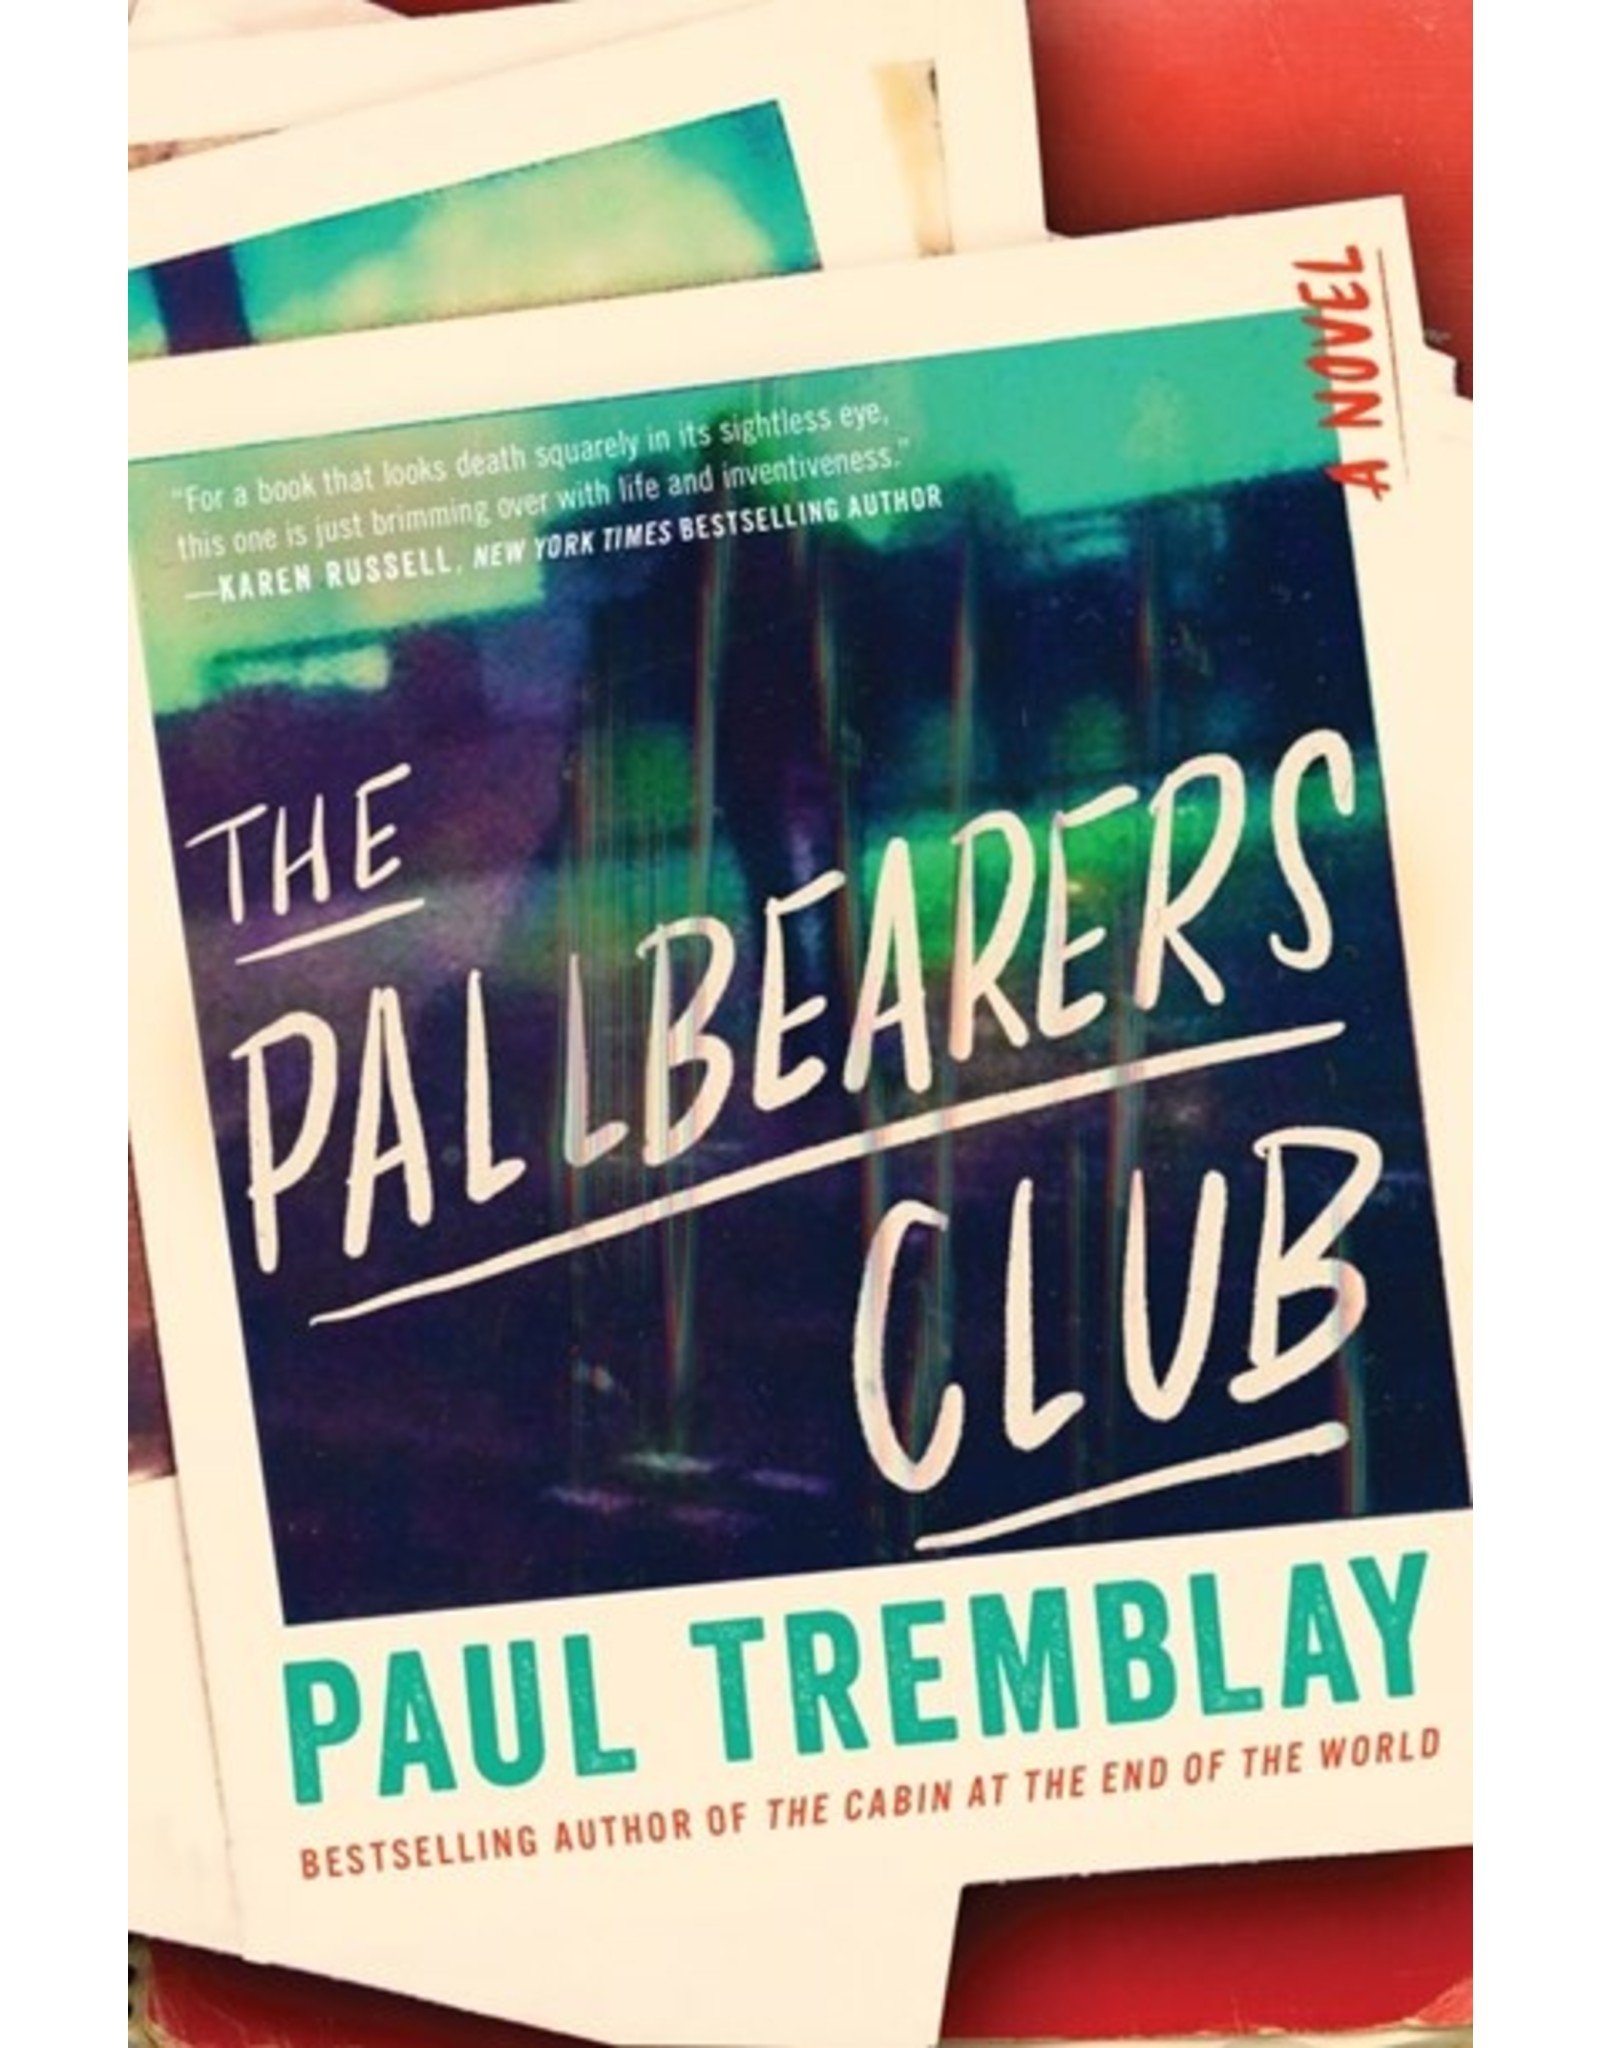 Books The Pallbearers Club : A Novel by Paul Tremblay